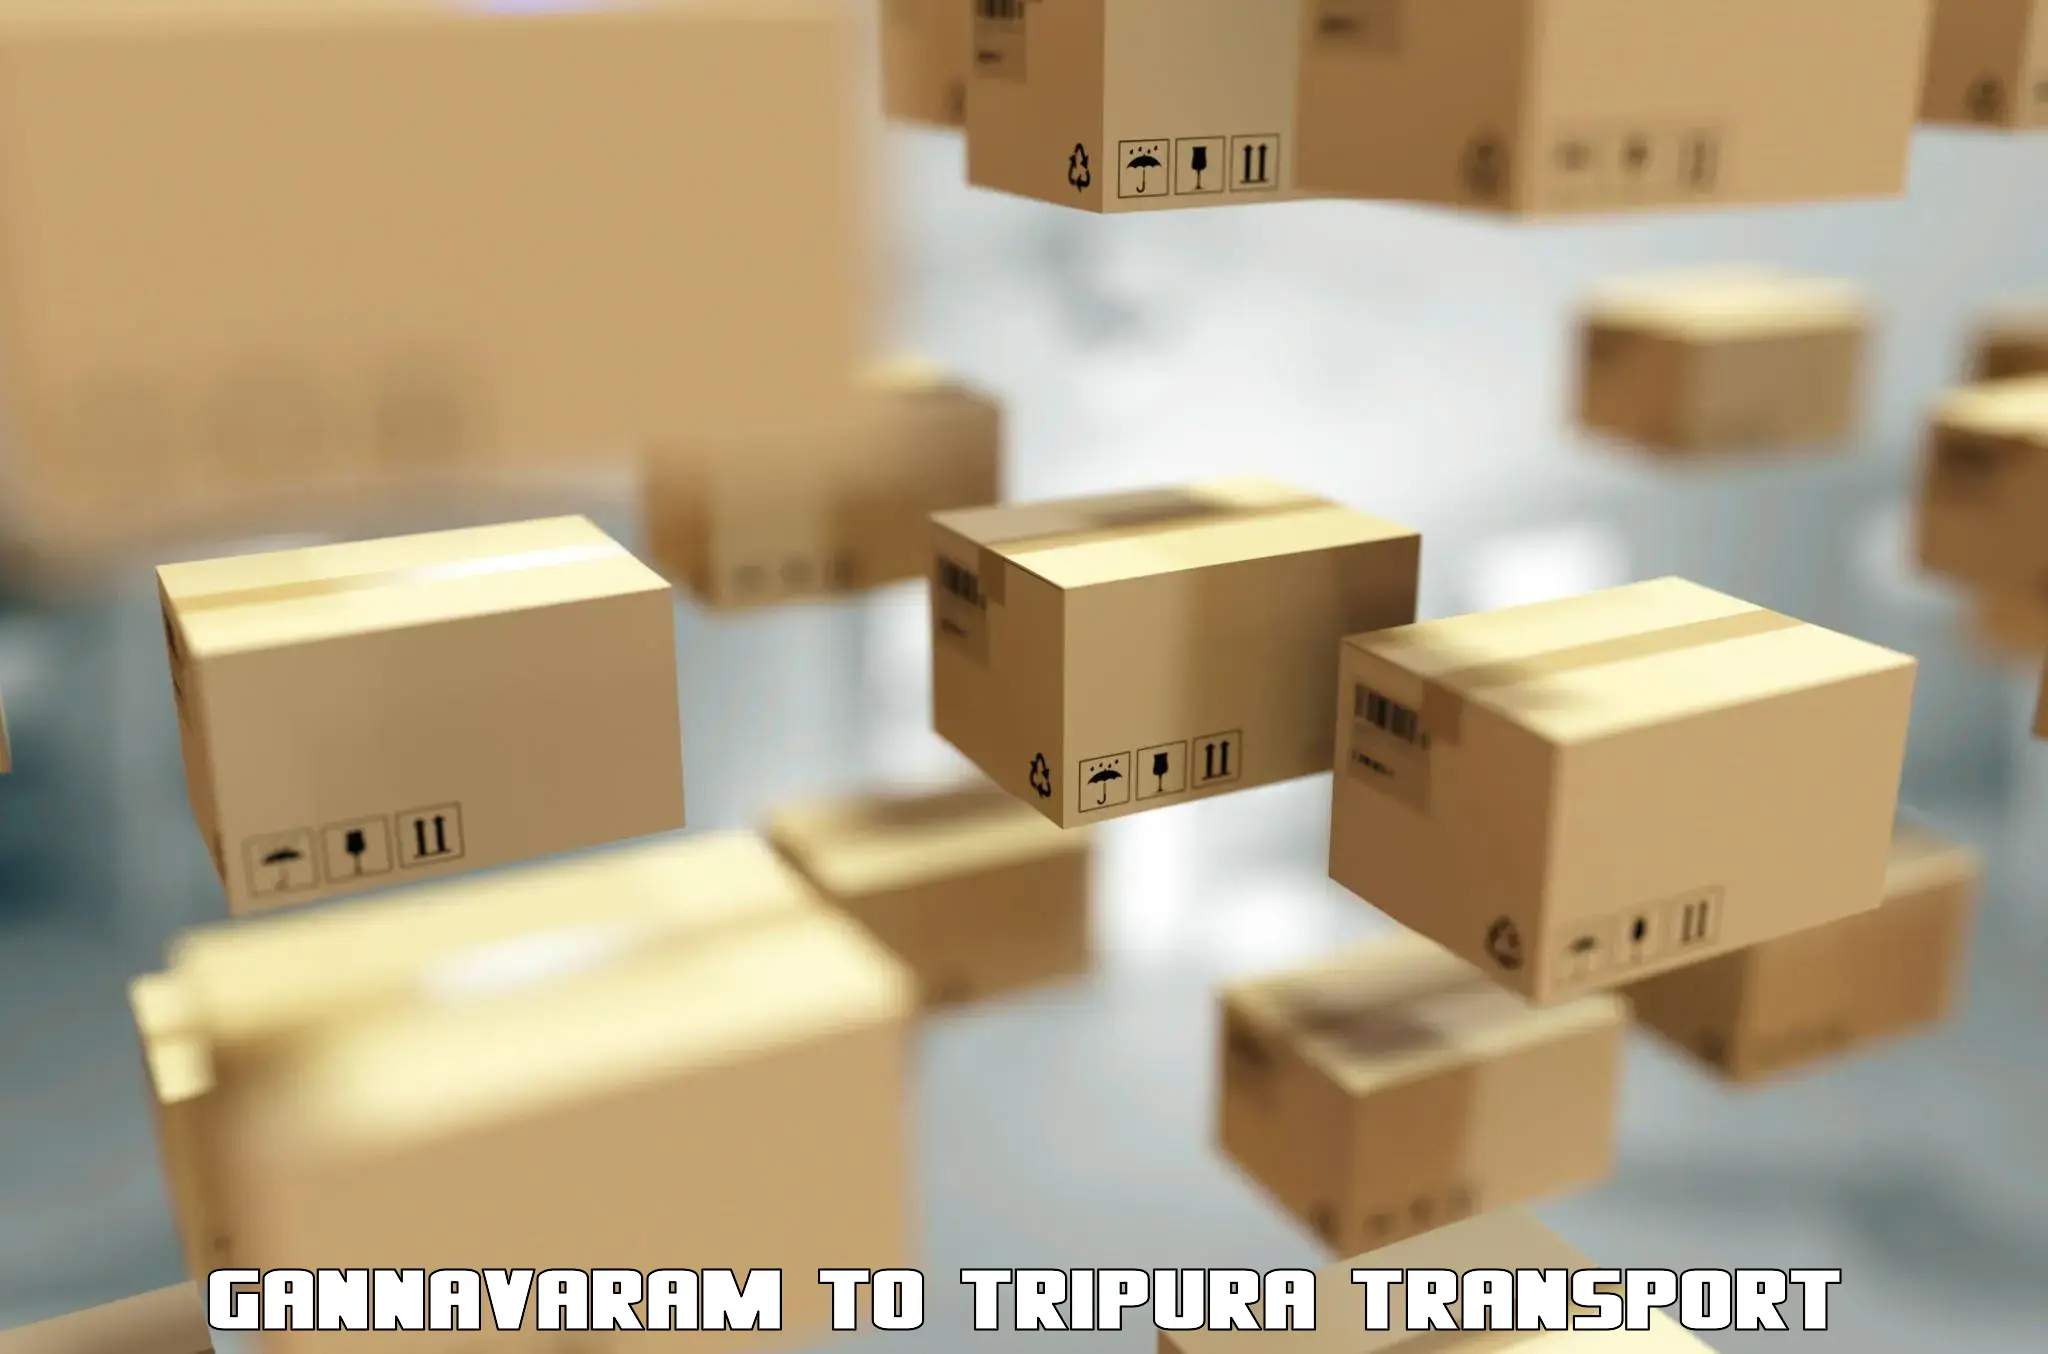 Road transport online services Gannavaram to Tripura